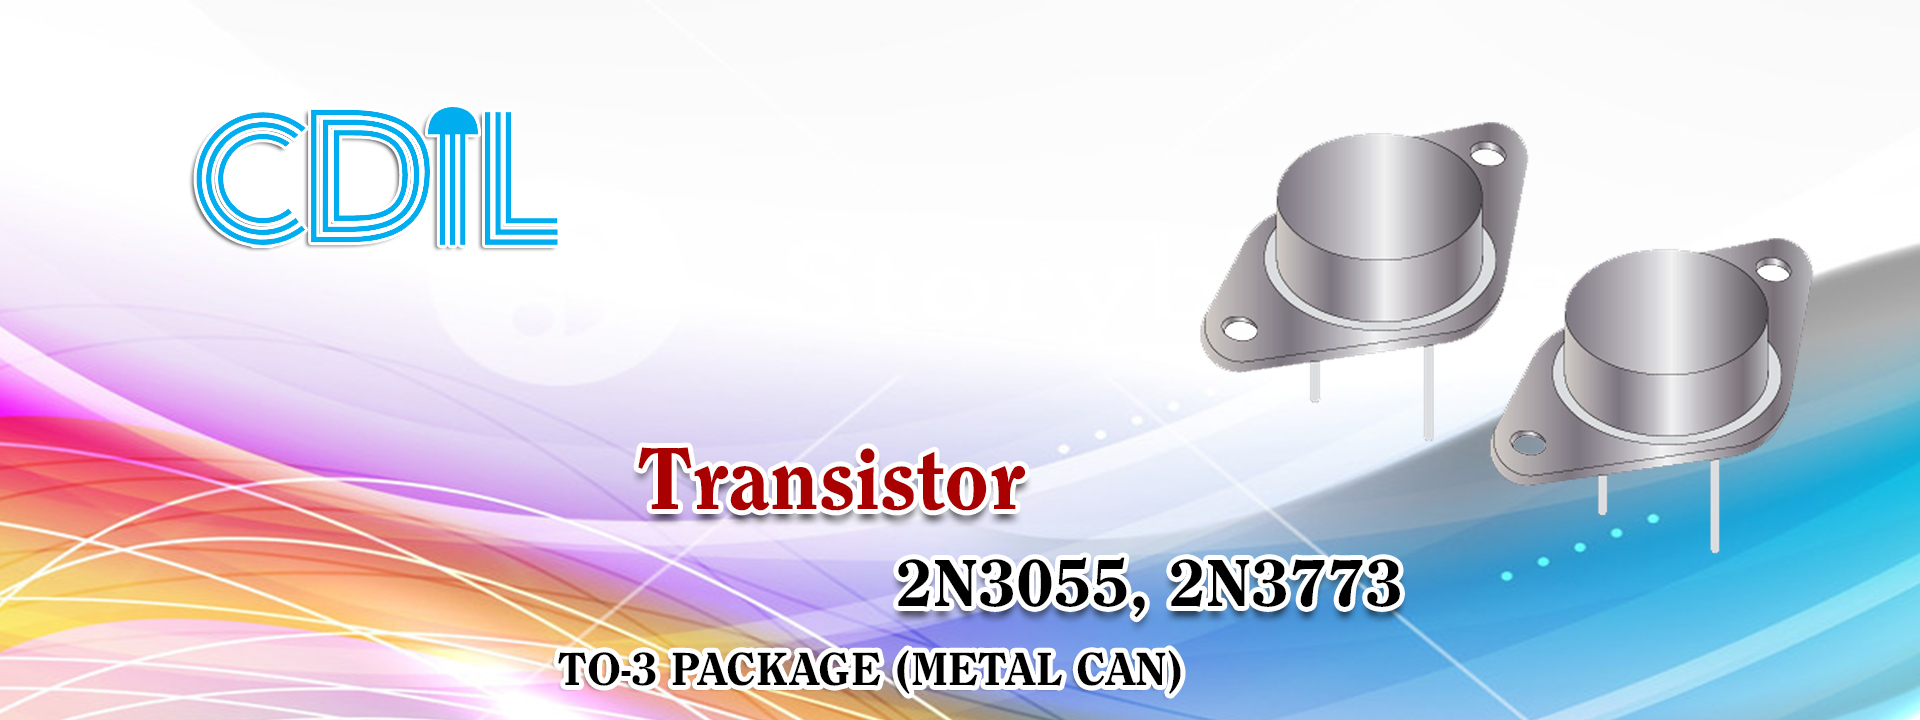 CDIL - Transistors 2N3055, 2N3773